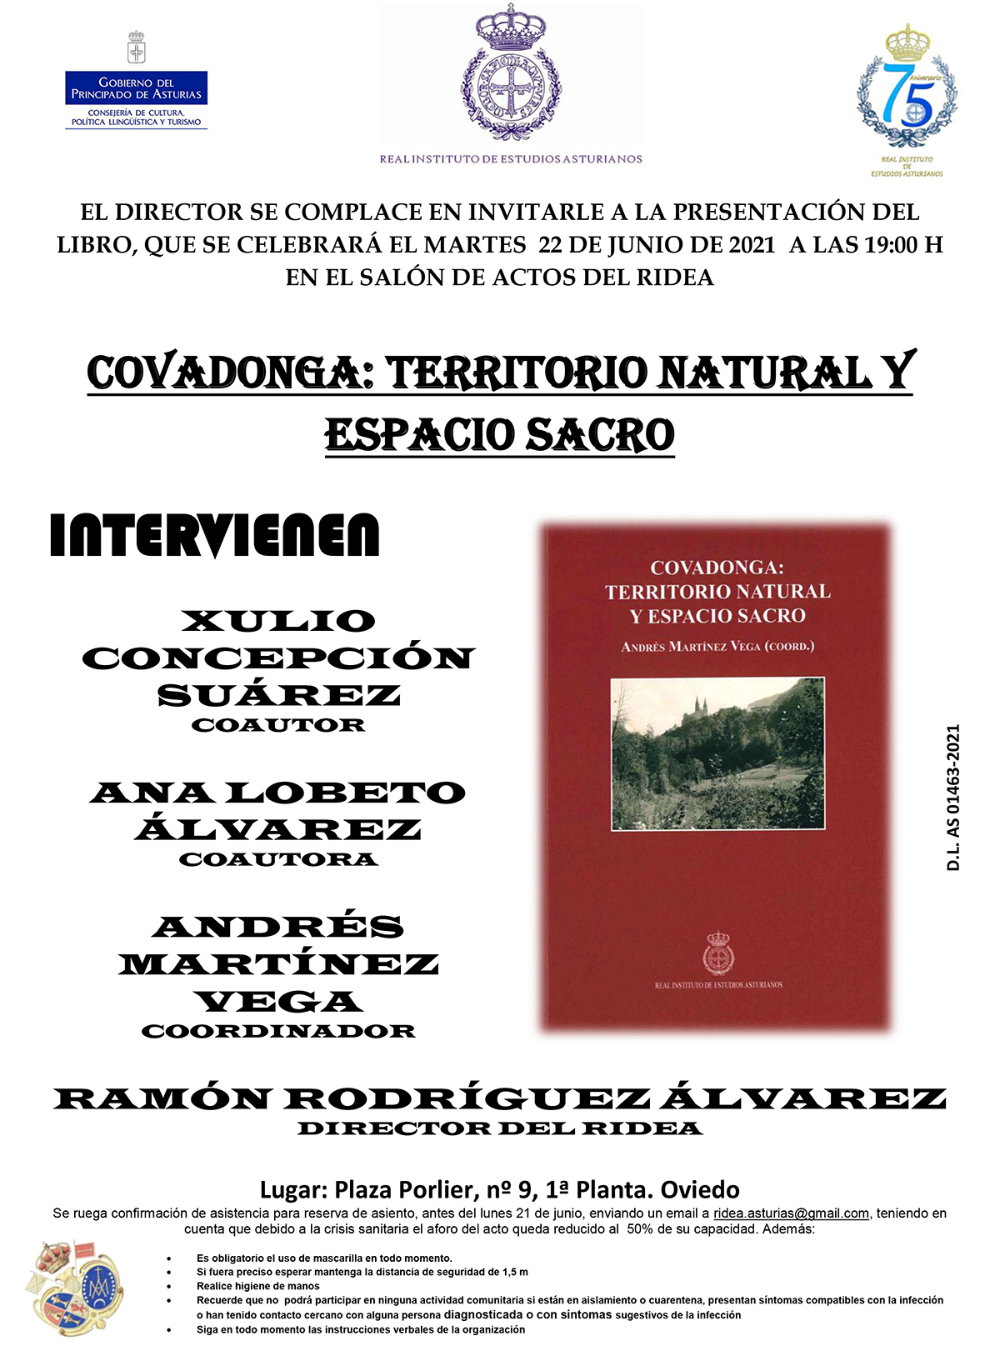 Imagen - Presentación del libro COVADONGA: TERRITORIO NATUrAL Y ESPACIO SACRO